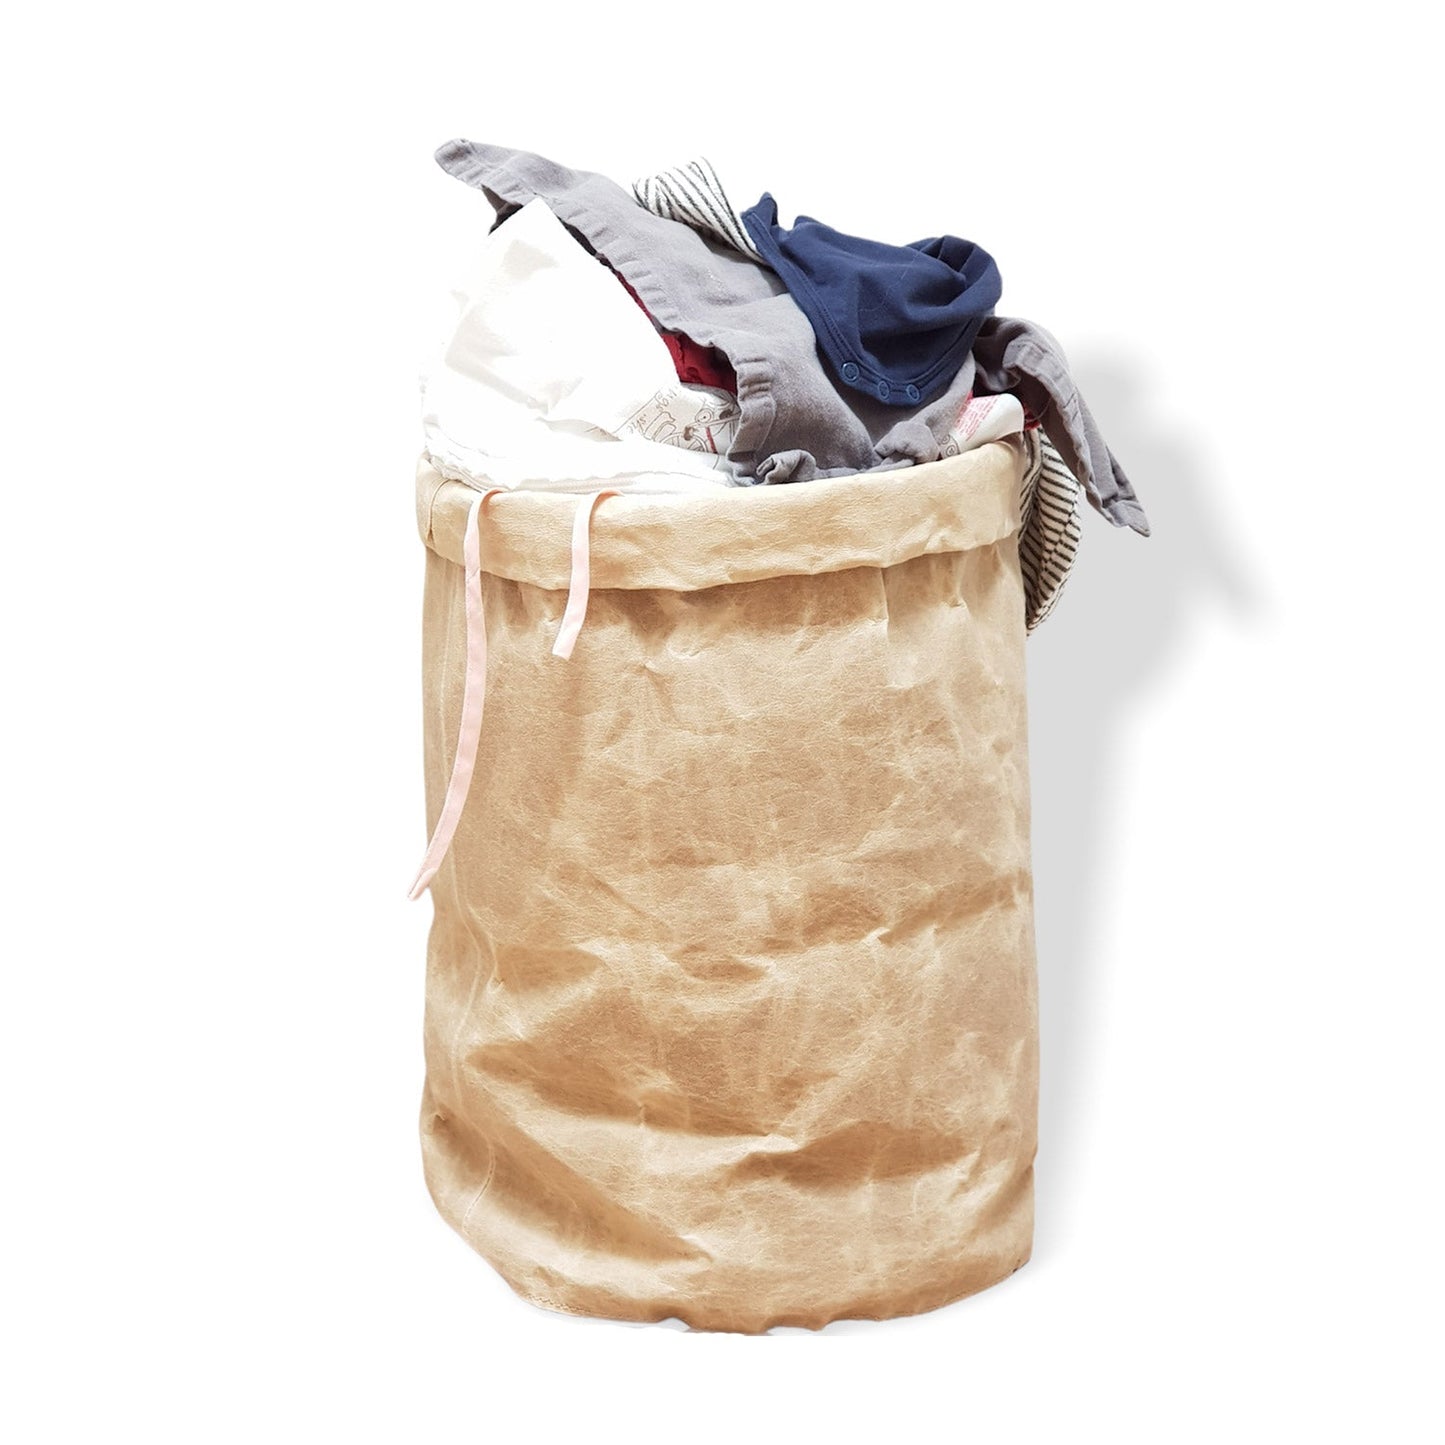 Cellulose baskets - Premium Bags & accessories from L&E Studio